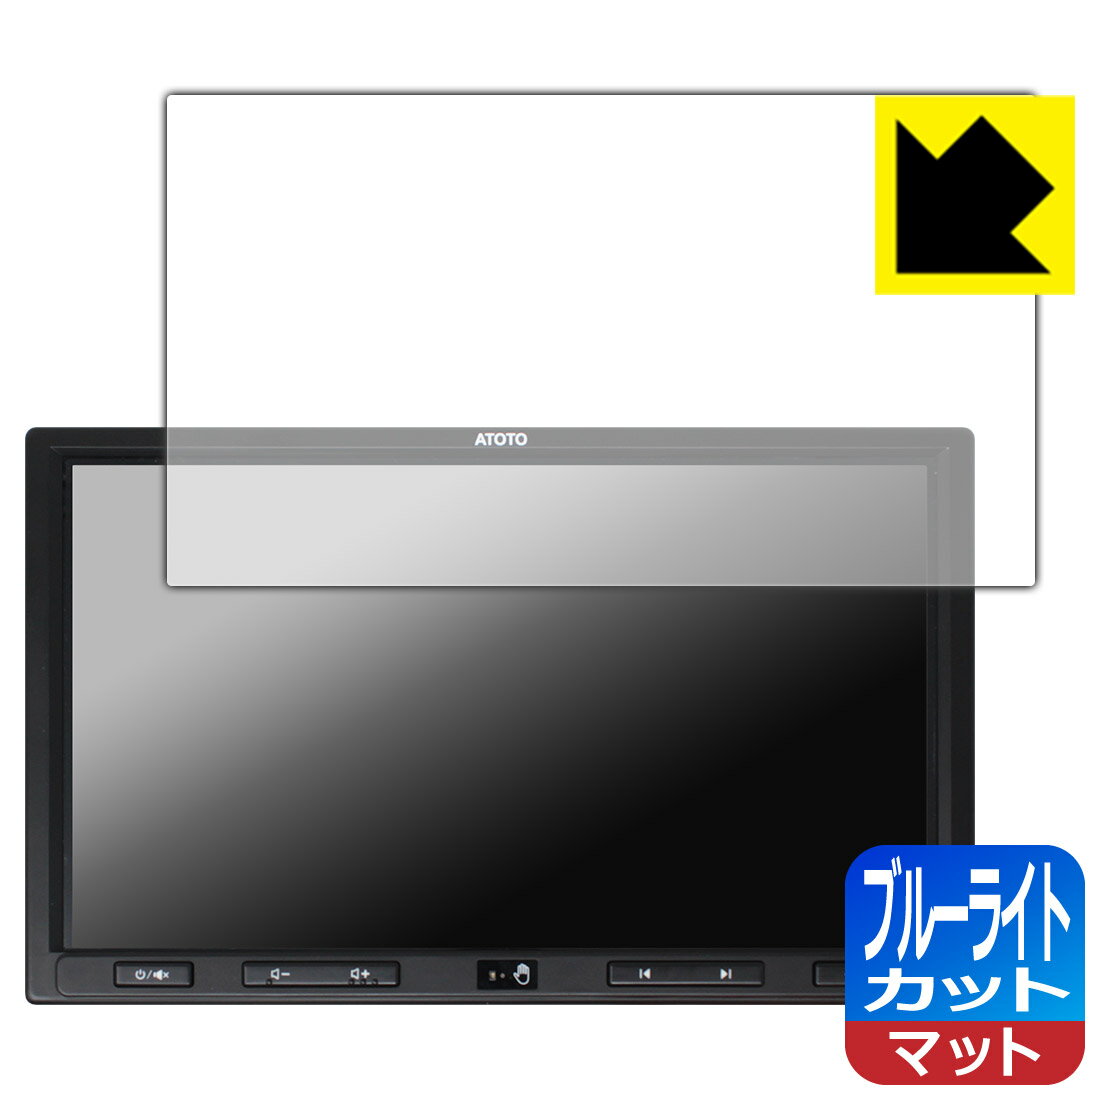 ブルーライトカット【反射低減】保護フィルム ATOTO S8 Ultra Plus (Gen 2) 10.1インチ 日本製 自社製造直販